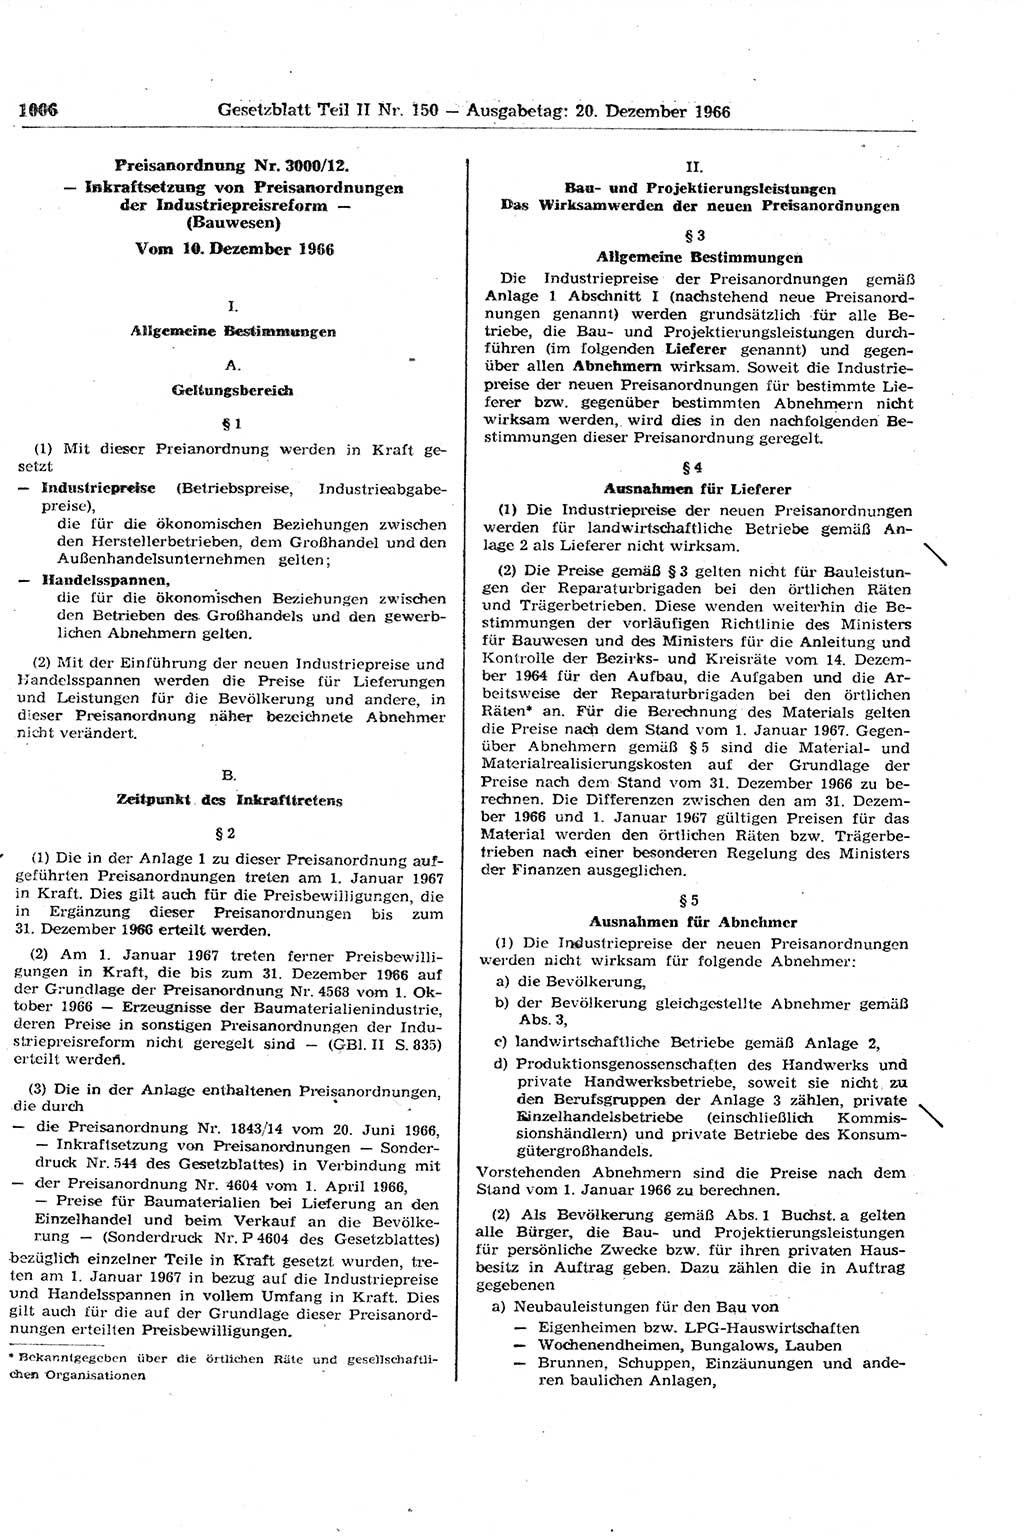 Gesetzblatt (GBl.) der Deutschen Demokratischen Republik (DDR) Teil ⅠⅠ 1966, Seite 1006 (GBl. DDR ⅠⅠ 1966, S. 1006)